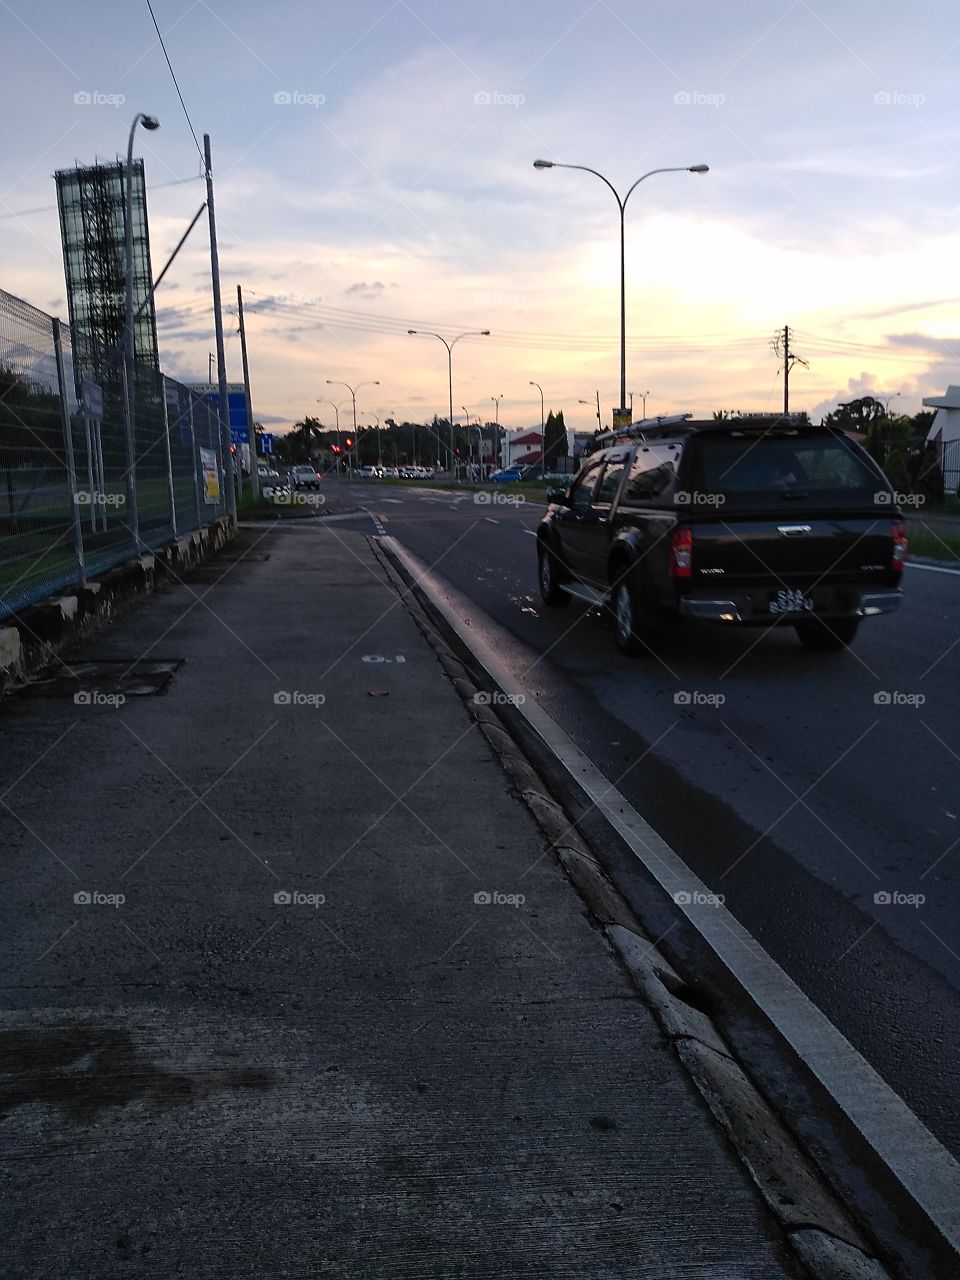 Jalan Damai and Jalan Tuaran, Likas, Kota Kinabalu, Sabah, Malaysia